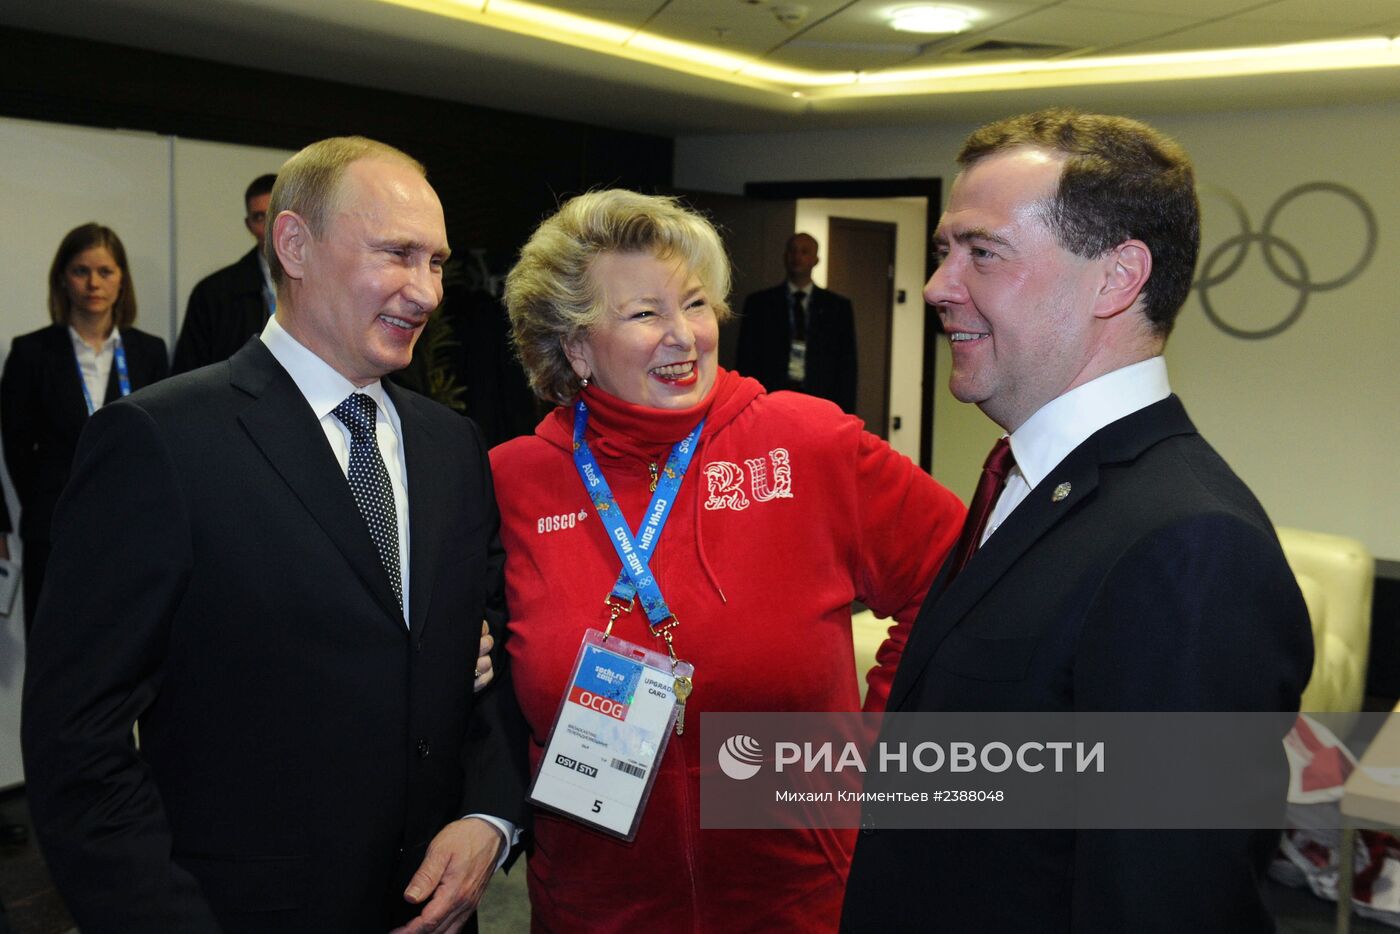 В.Путин и Д.Медведев посетили церемонию закрытия XXII зимних Олимпийских игр в Сочи